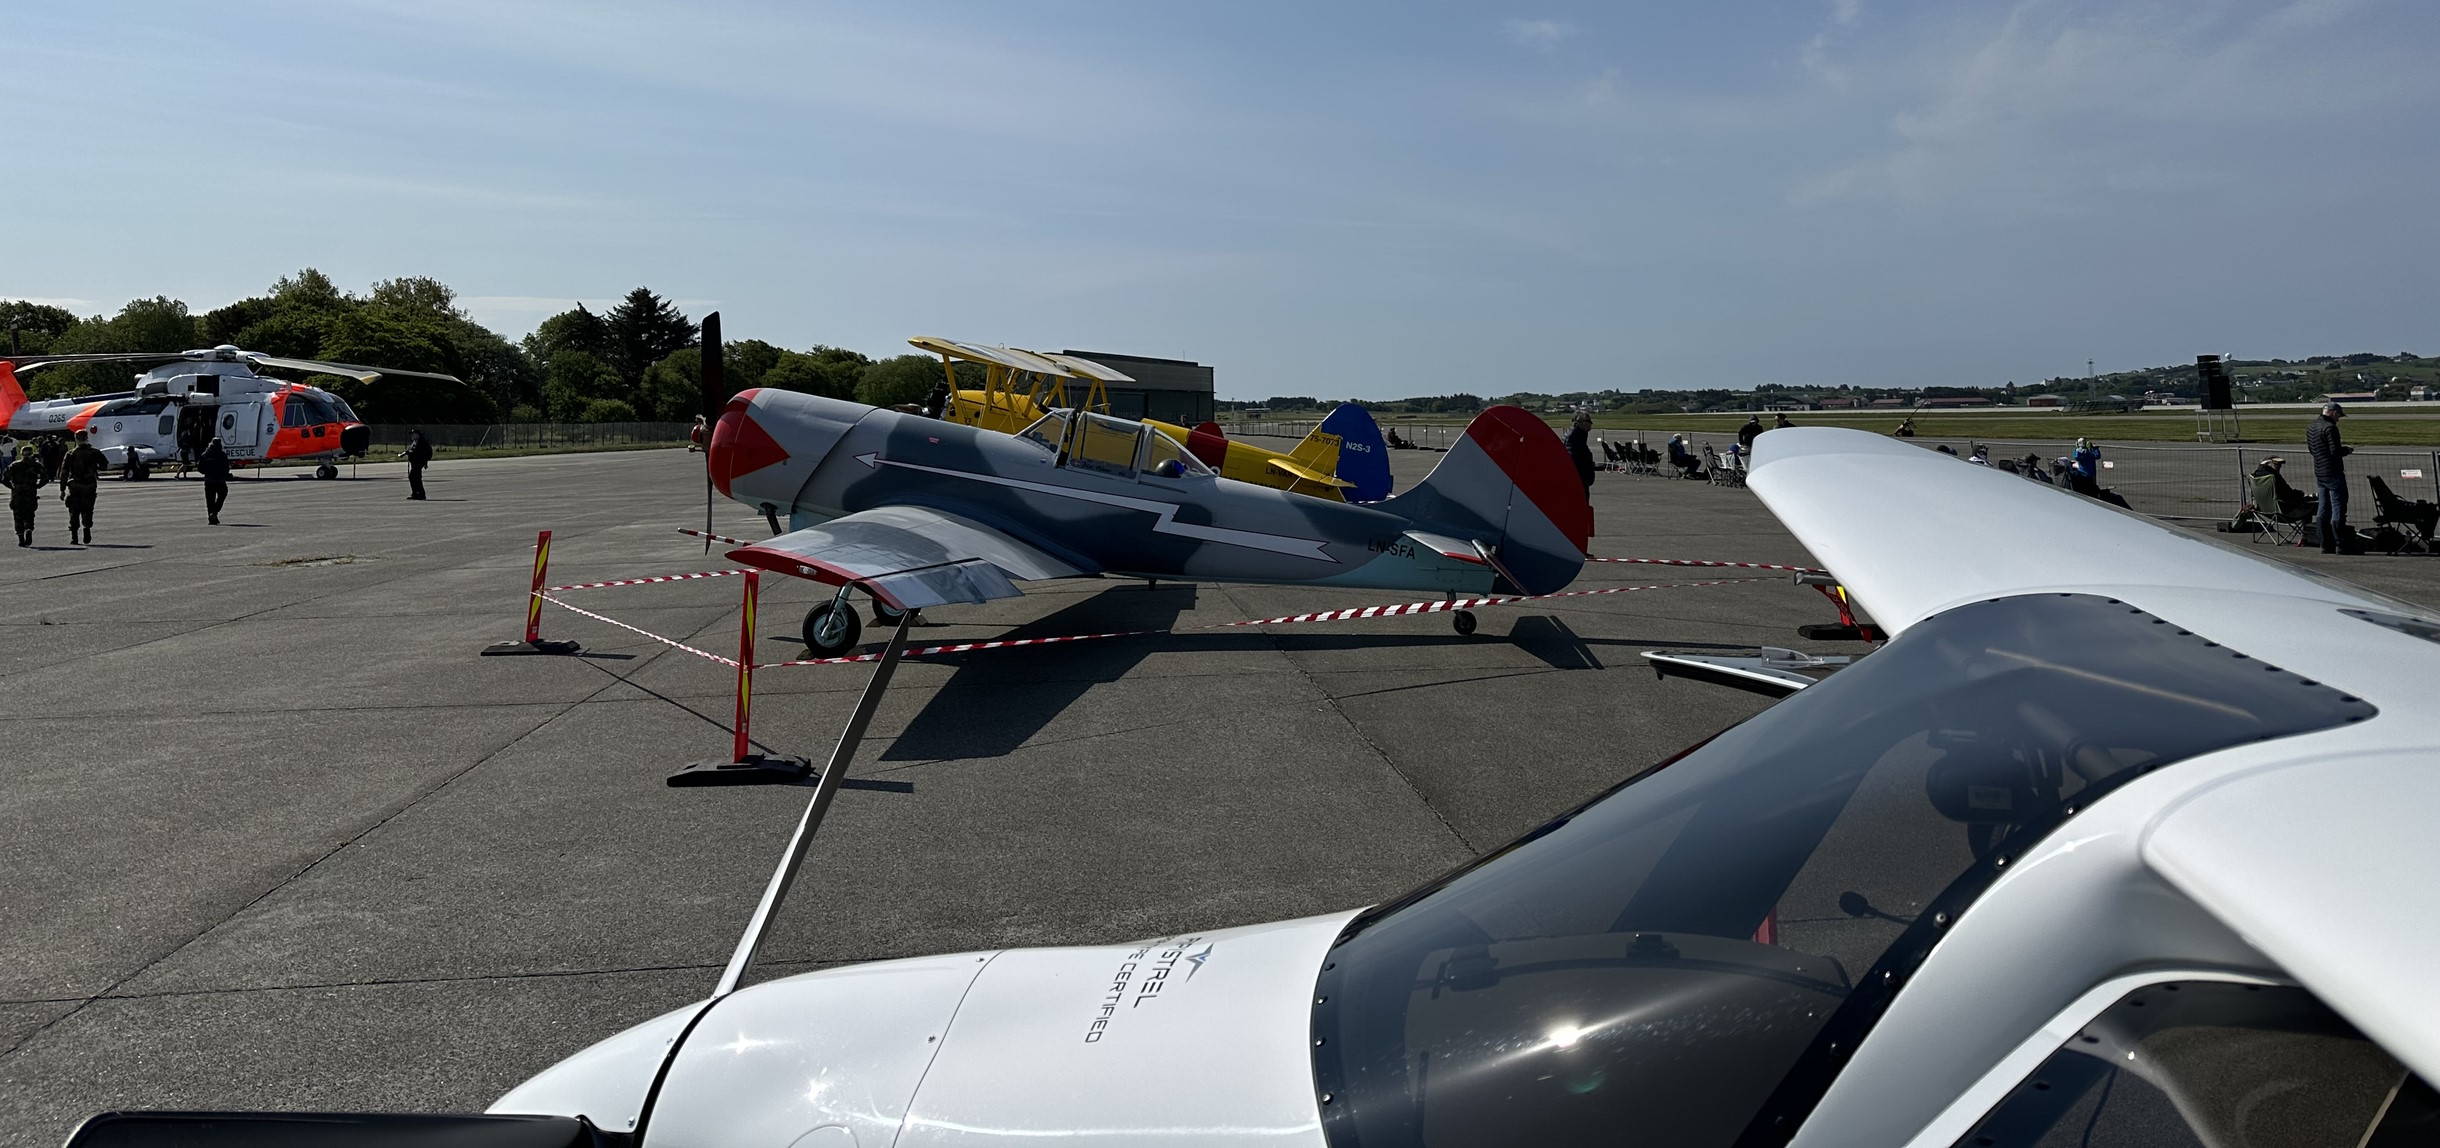 Nytt og gamle fly side om side